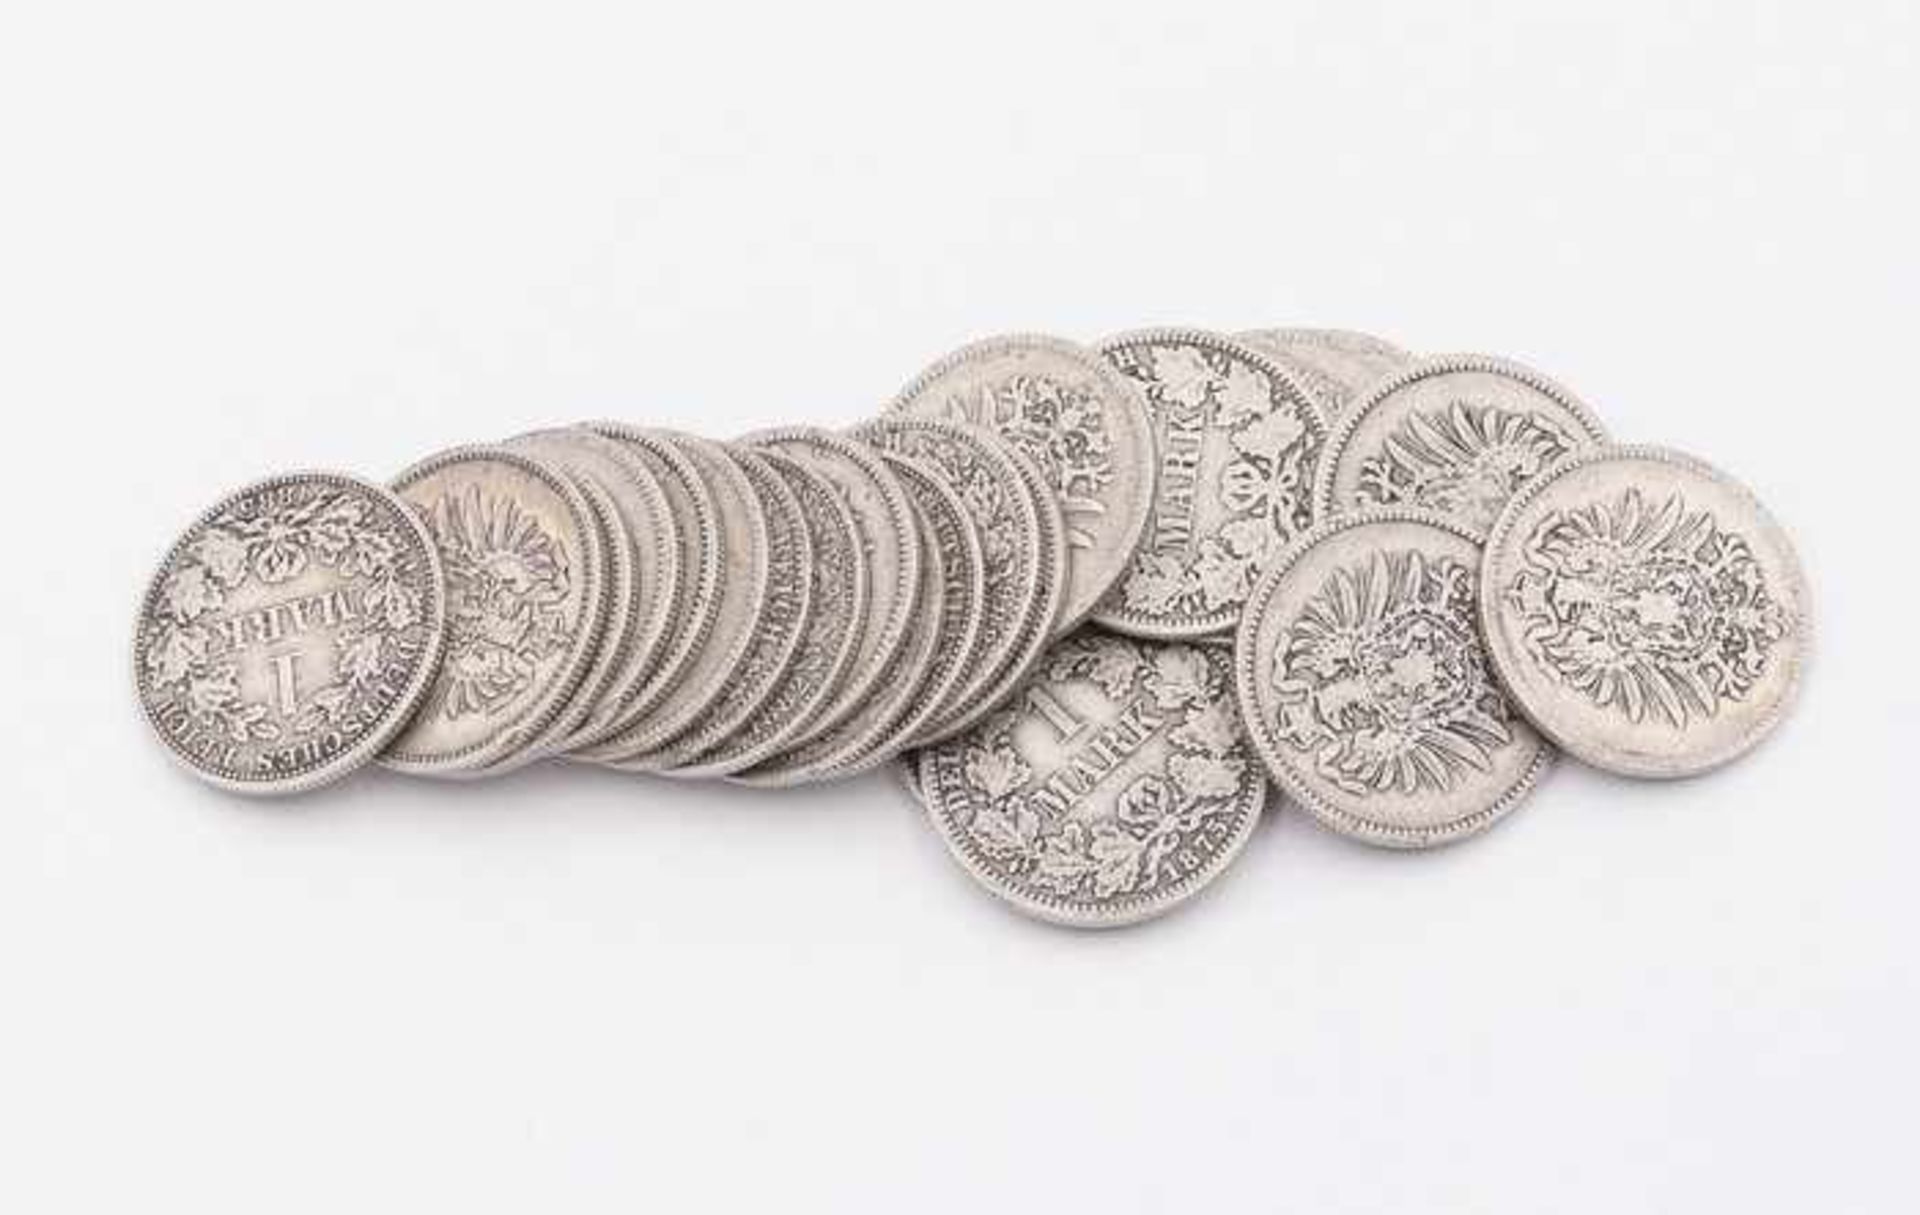 Münzen - KaiserreichSi 900, 24x 1 Mark, 1875-1886, Gges. ca. 129g, ss-s- - -20.00 % buyer's